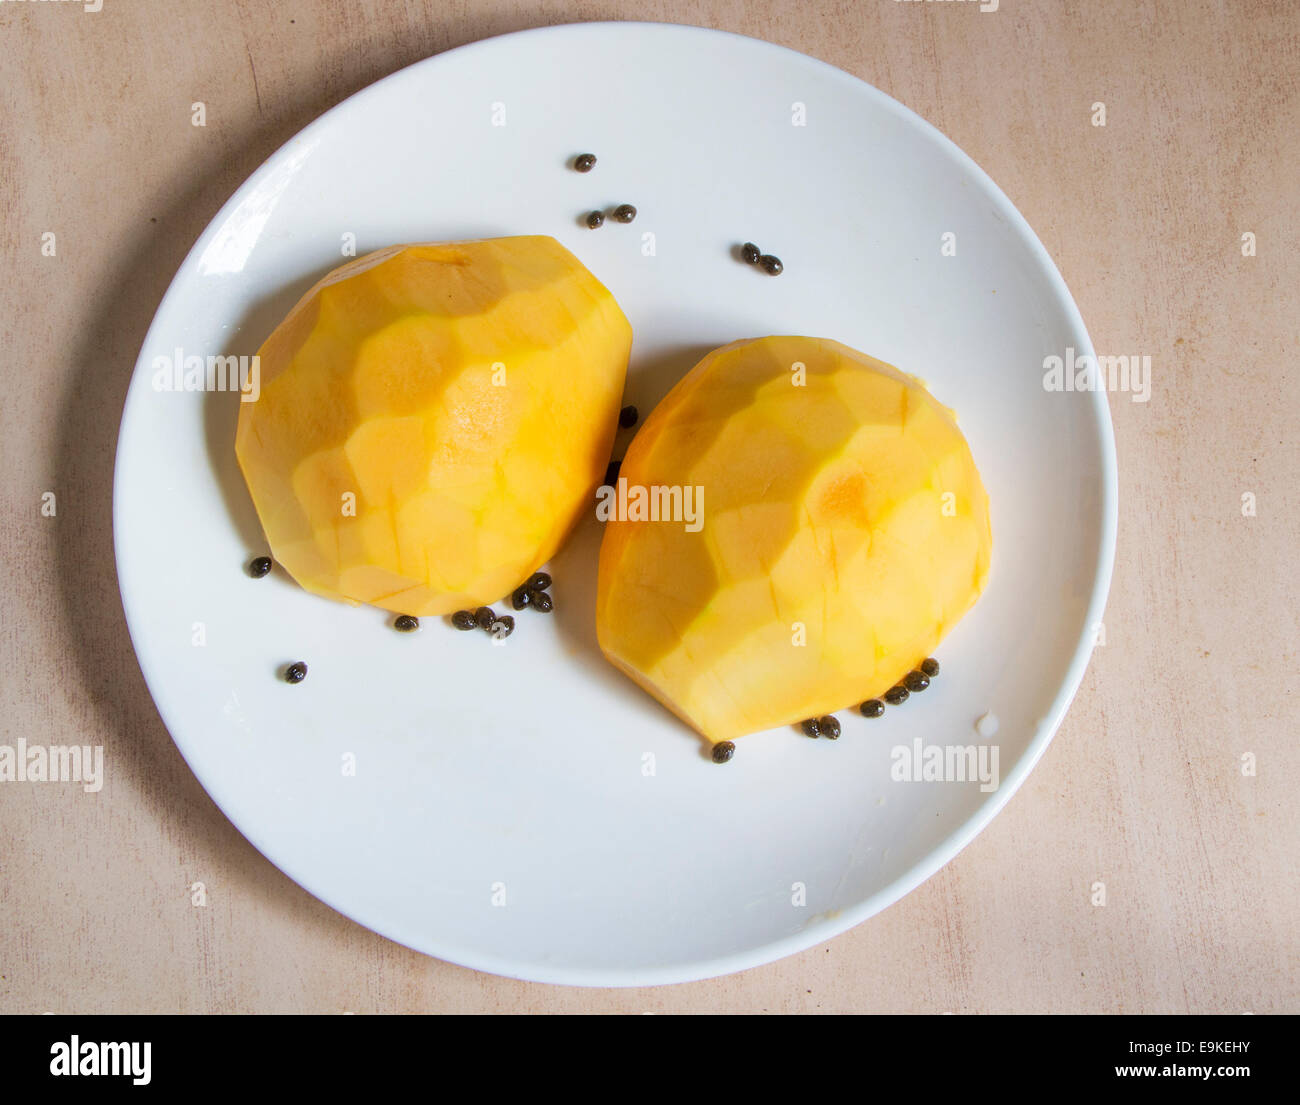 Carica Pappaya Früchte in zwei Stücke schneiden auf eine weiße Platte Oberflächenansicht gelb farbigen reich an Flavonoiden Antioxidanst platziert Stockfoto